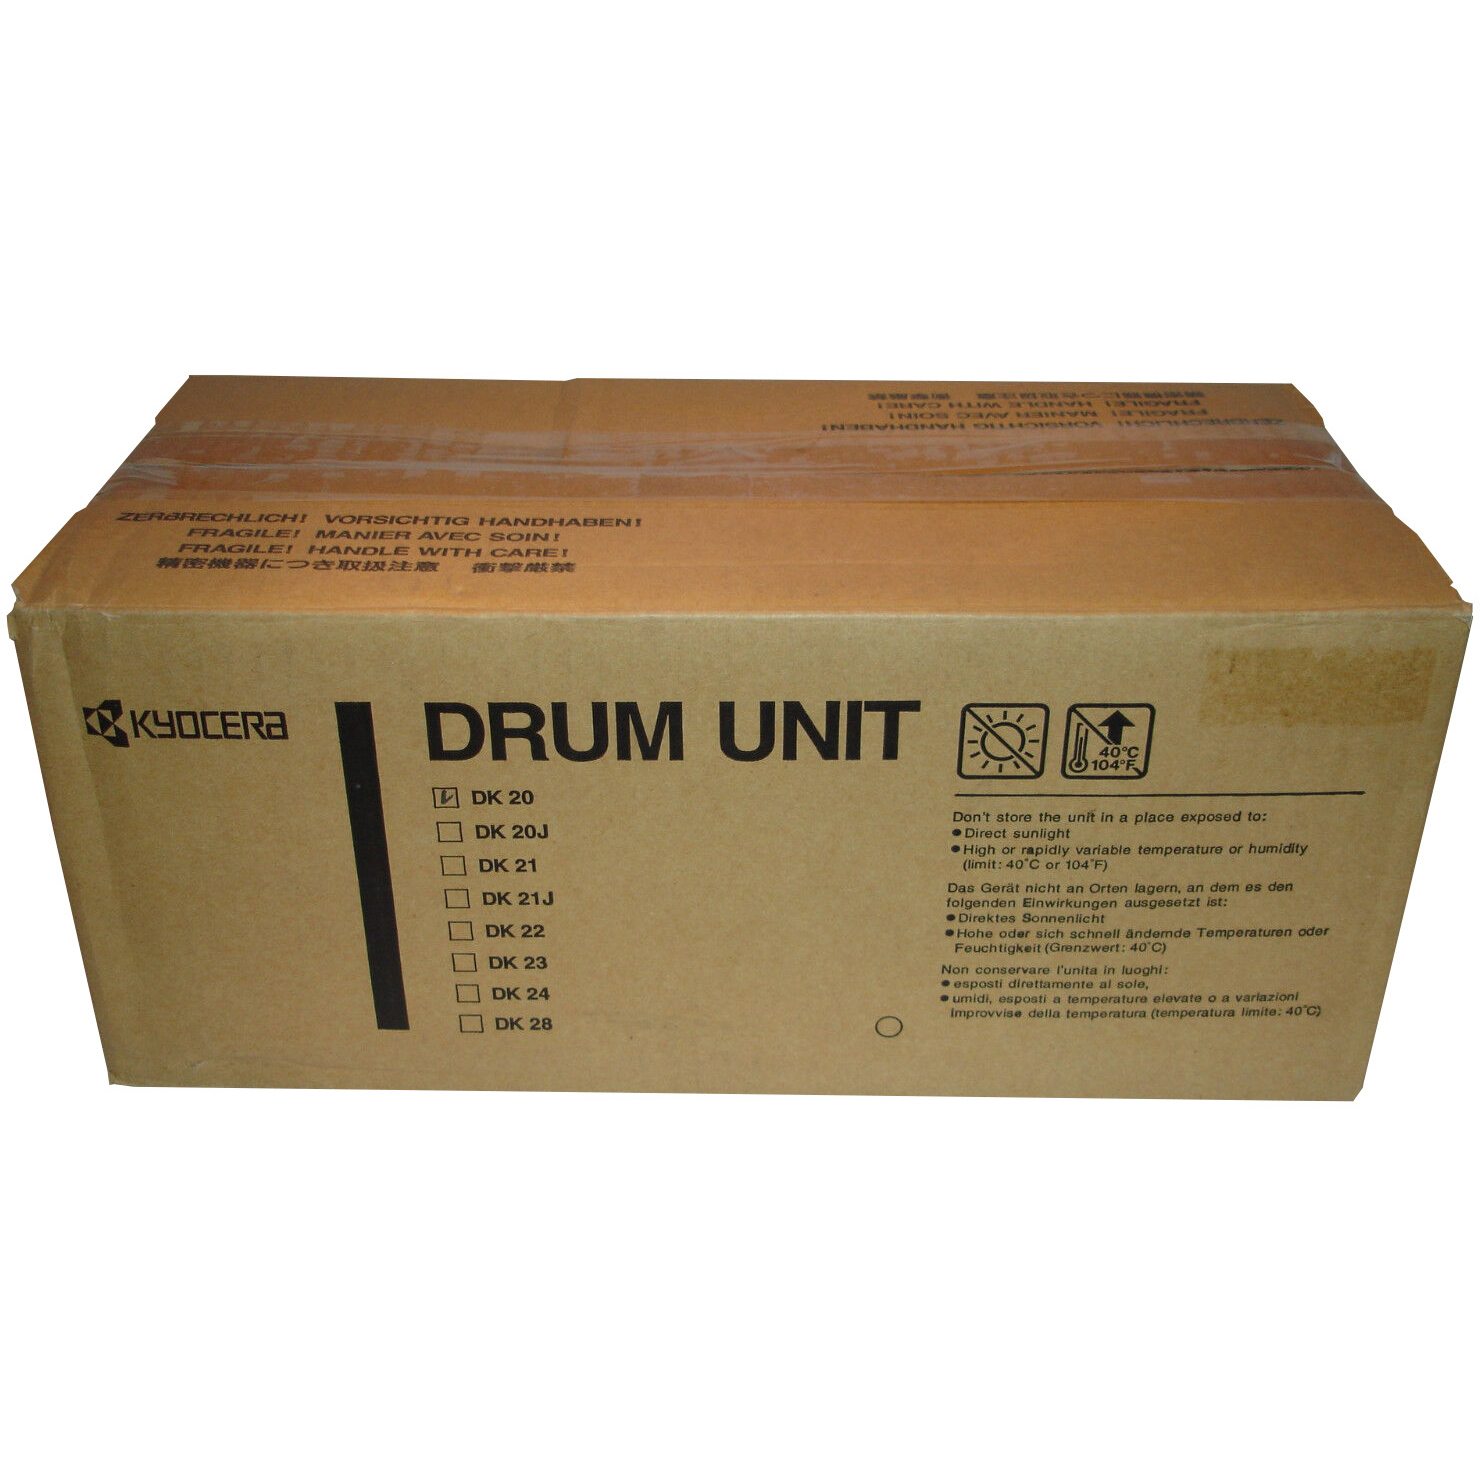 Original Kyocera DK-20 Drum Unit (DK20)